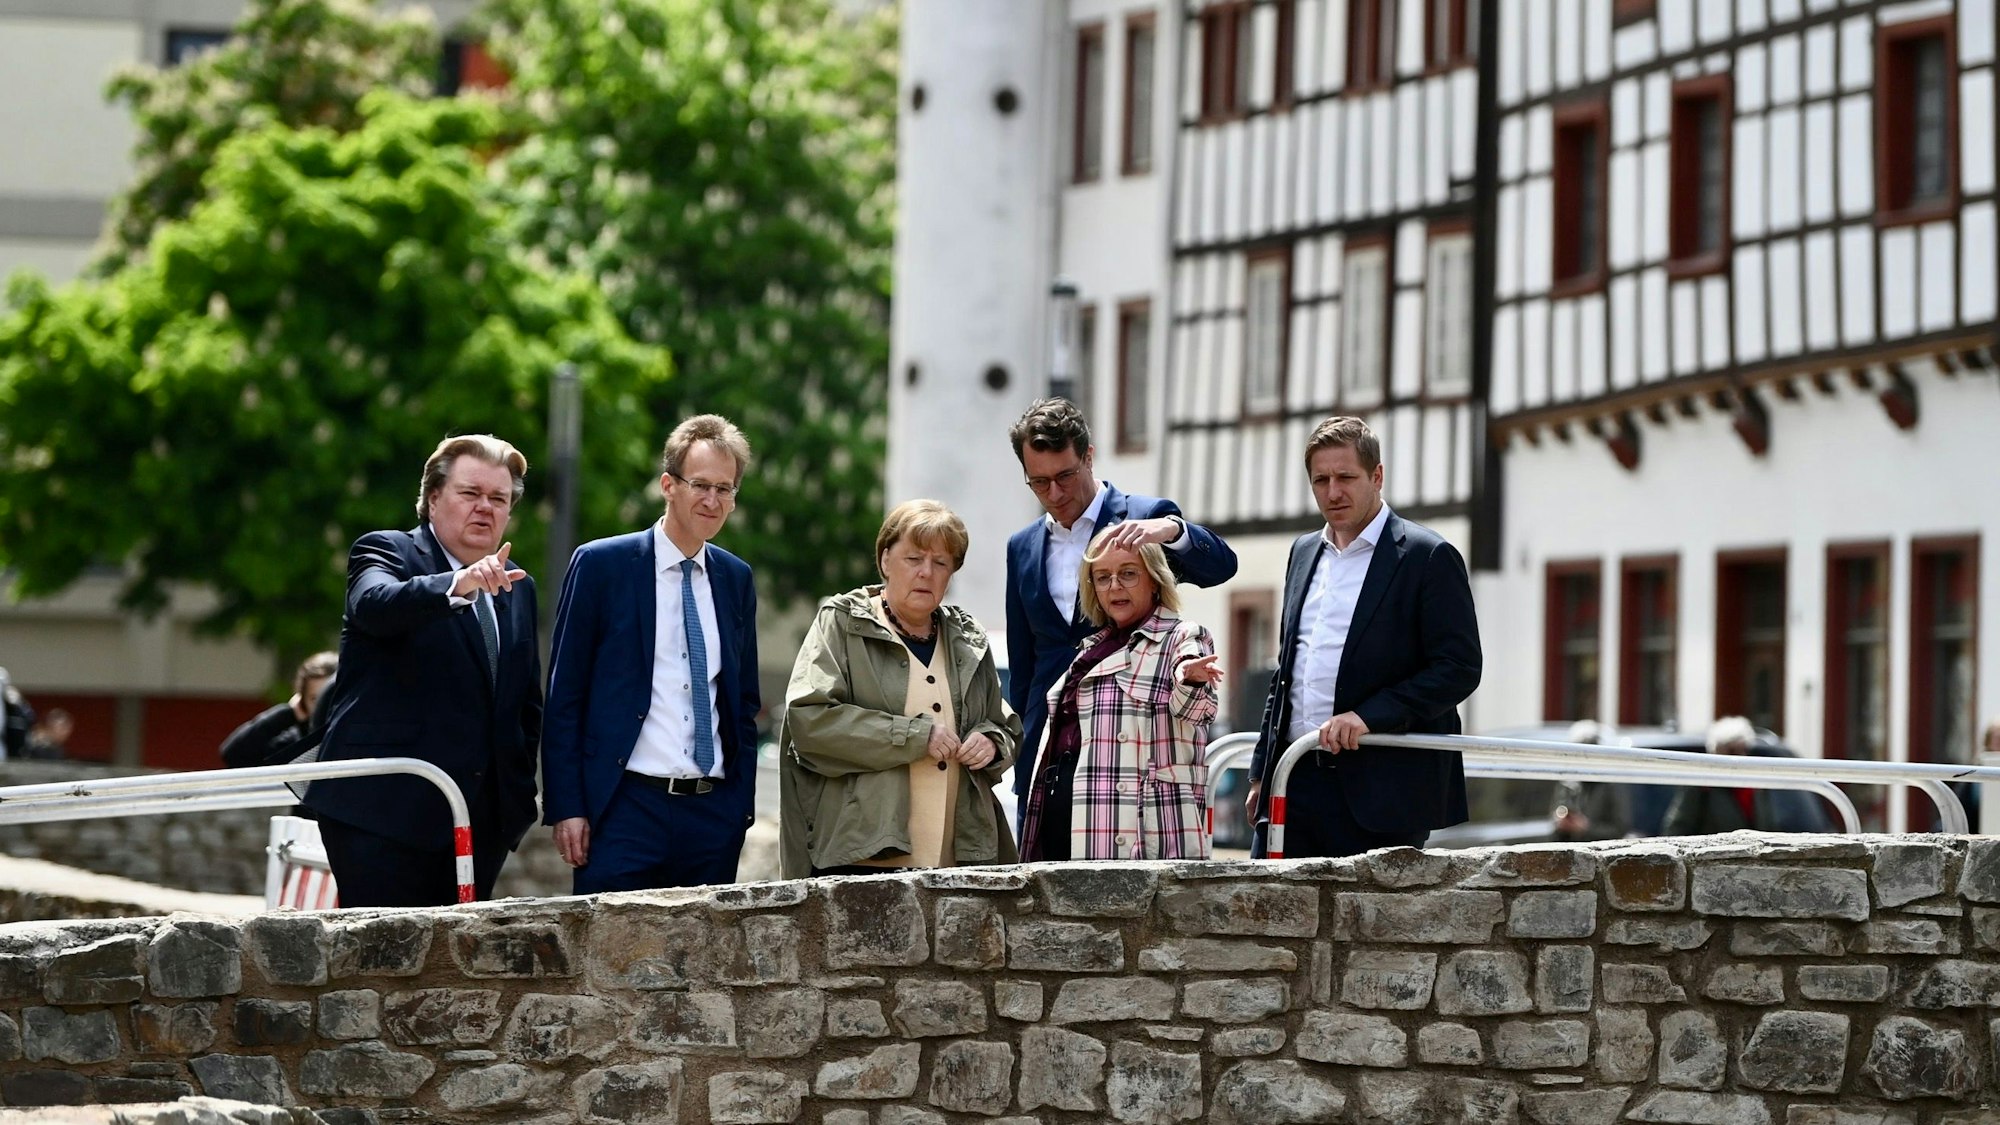 Angela Merkel besucht gemeinsam mit Hendrik Wüst erneut Bad Münstereifel